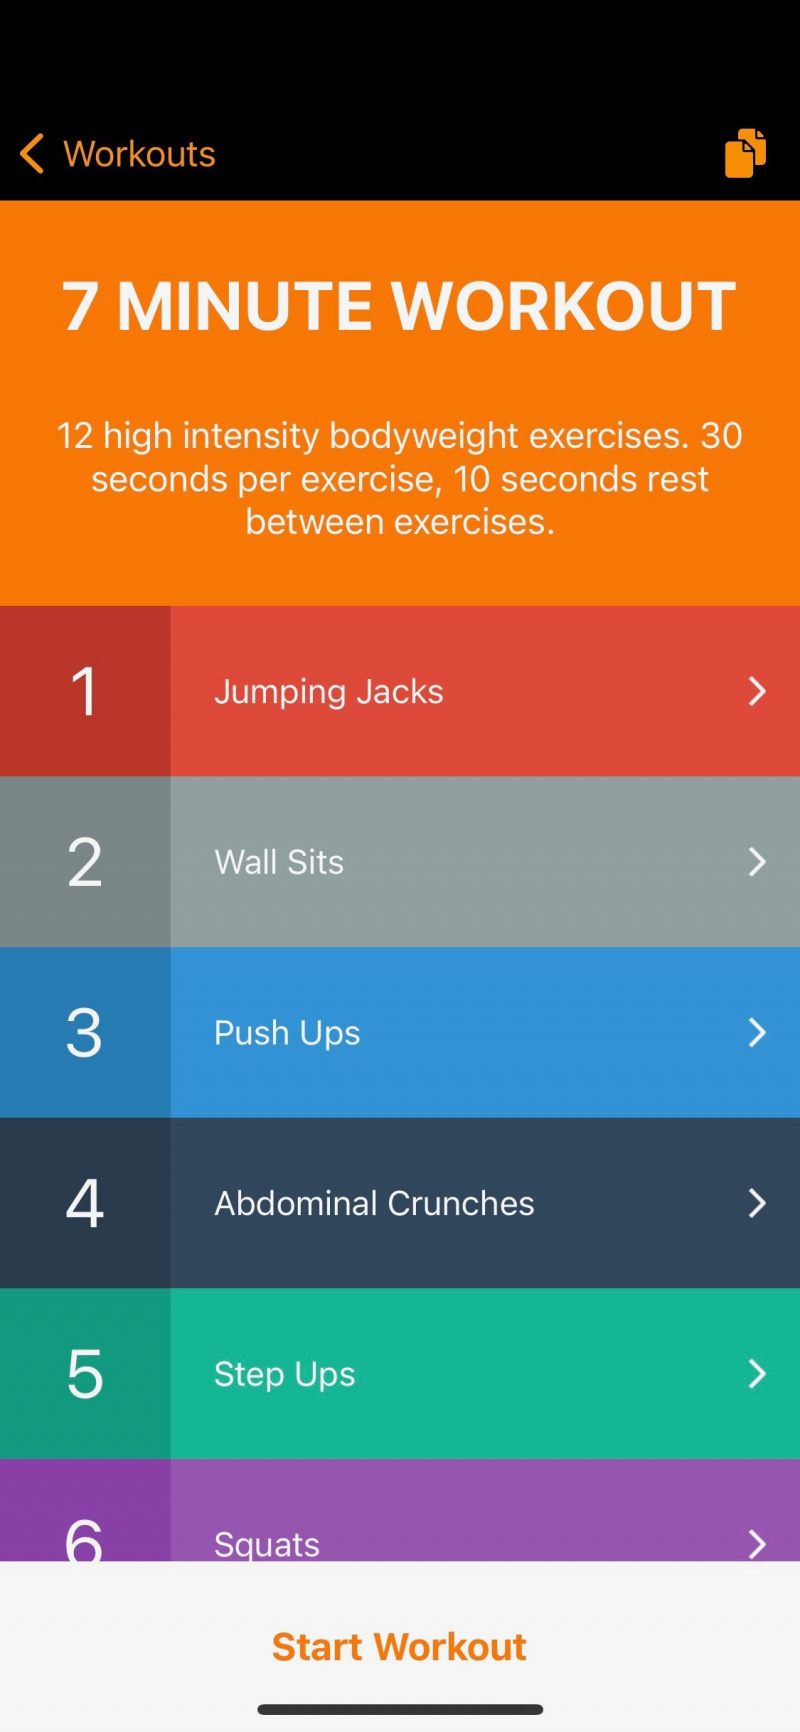   Capture d'écran de l'application 7 Minute Workout montrant des exercices au sein d'une séance d'entraînement